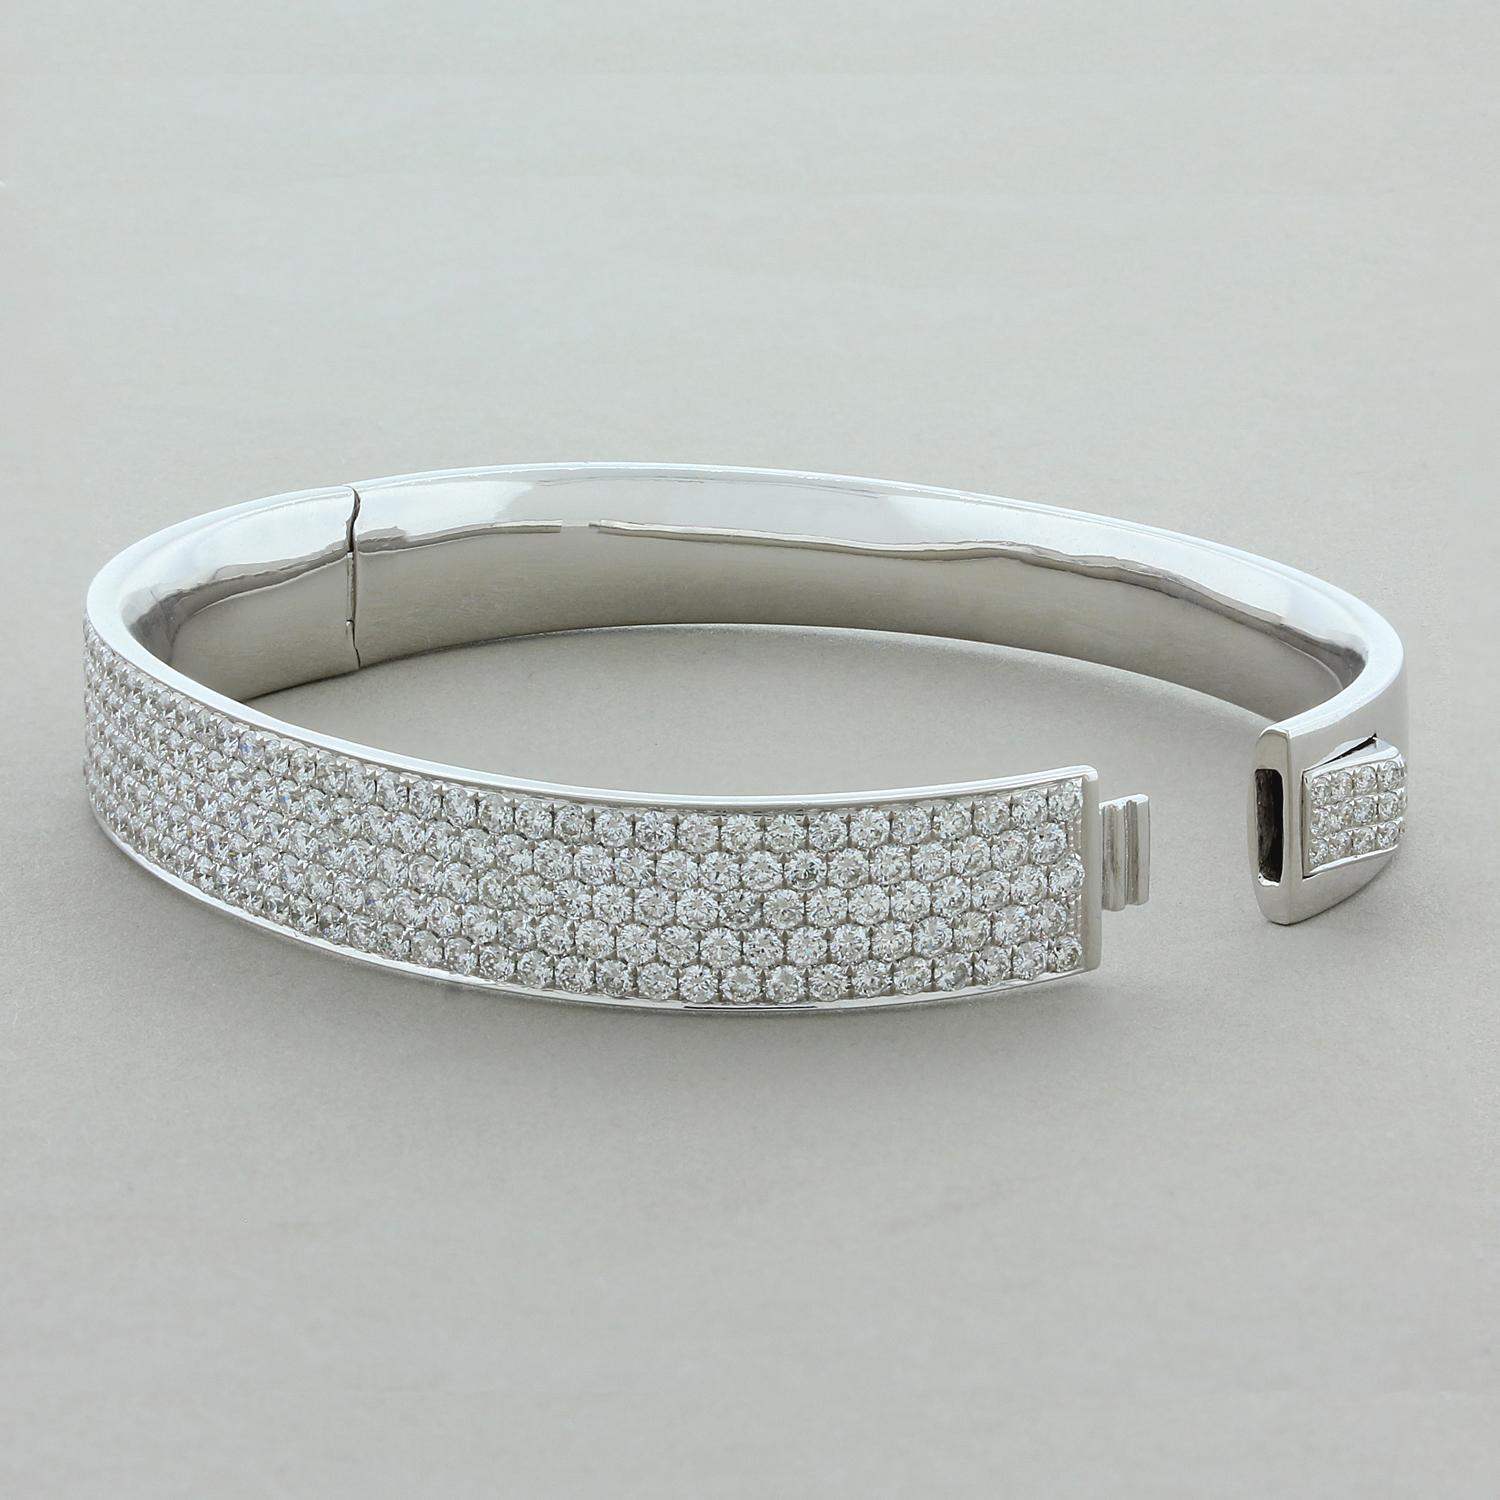 Cet élégant bracelet rigide présente 5,69 carats de diamants ronds étincelants de taille brillant, délicatement sertis en pavé dans de l'or blanc 18 carats. Les diamants recouvrent la moitié avant de ce bracelet de forme ovale. Le cadenas porte les